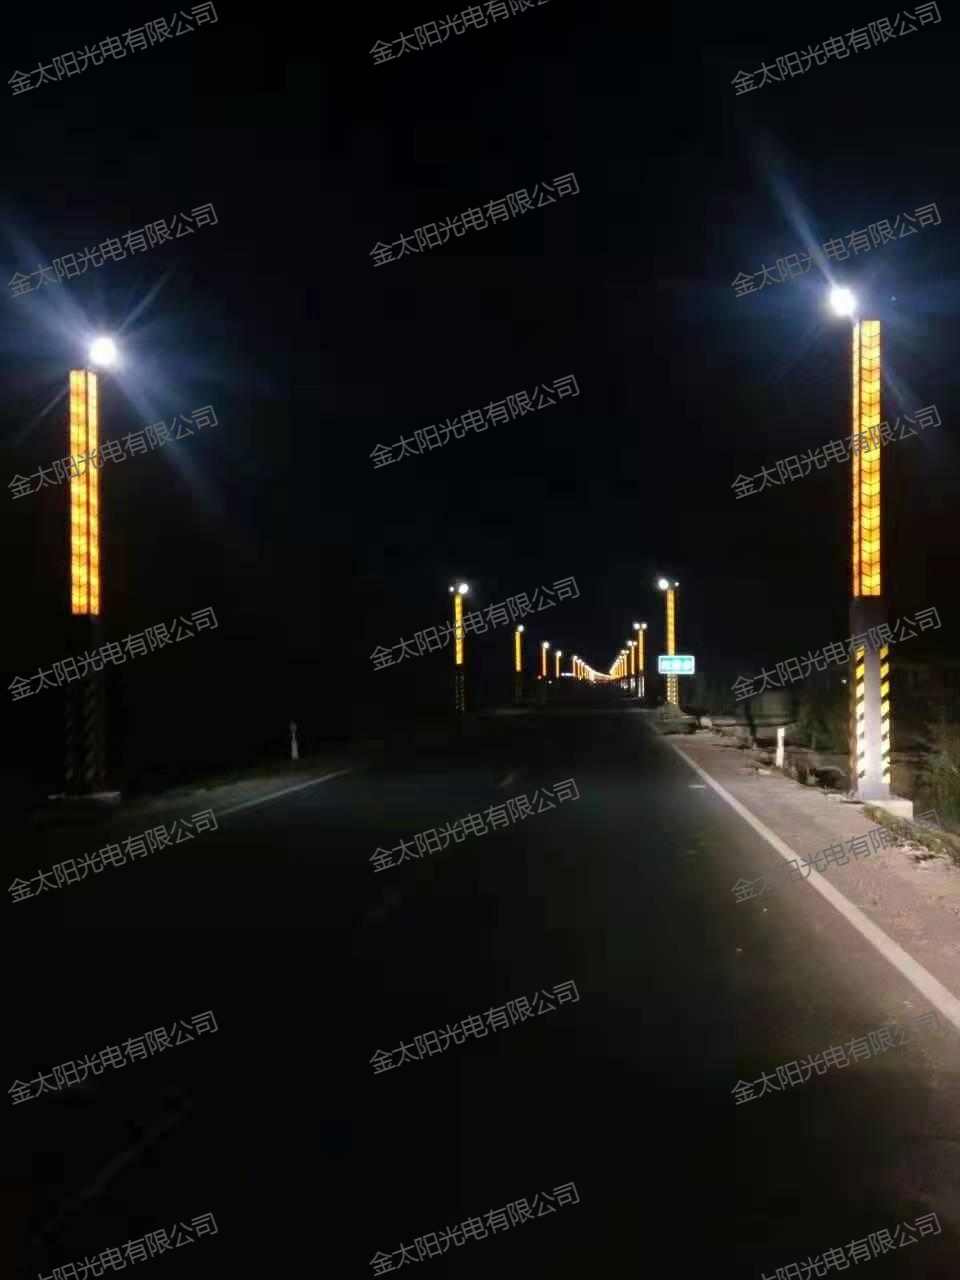 哈尔滨金太阳路灯制造基地直销各系路灯